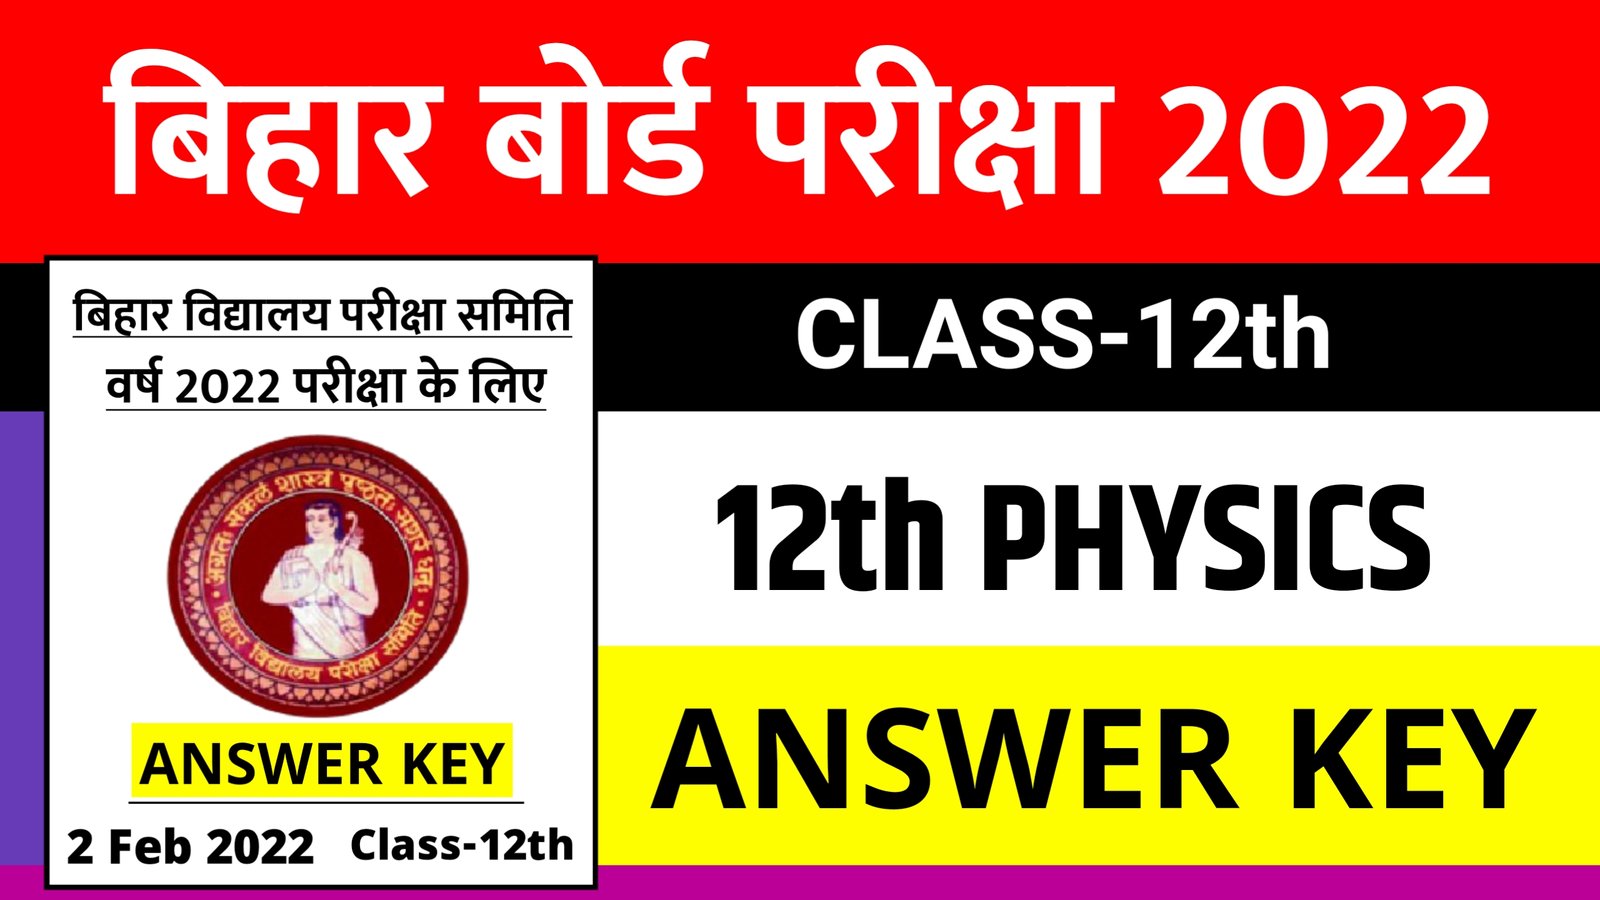 Bihar Board 12th Physics Answer Key 2022